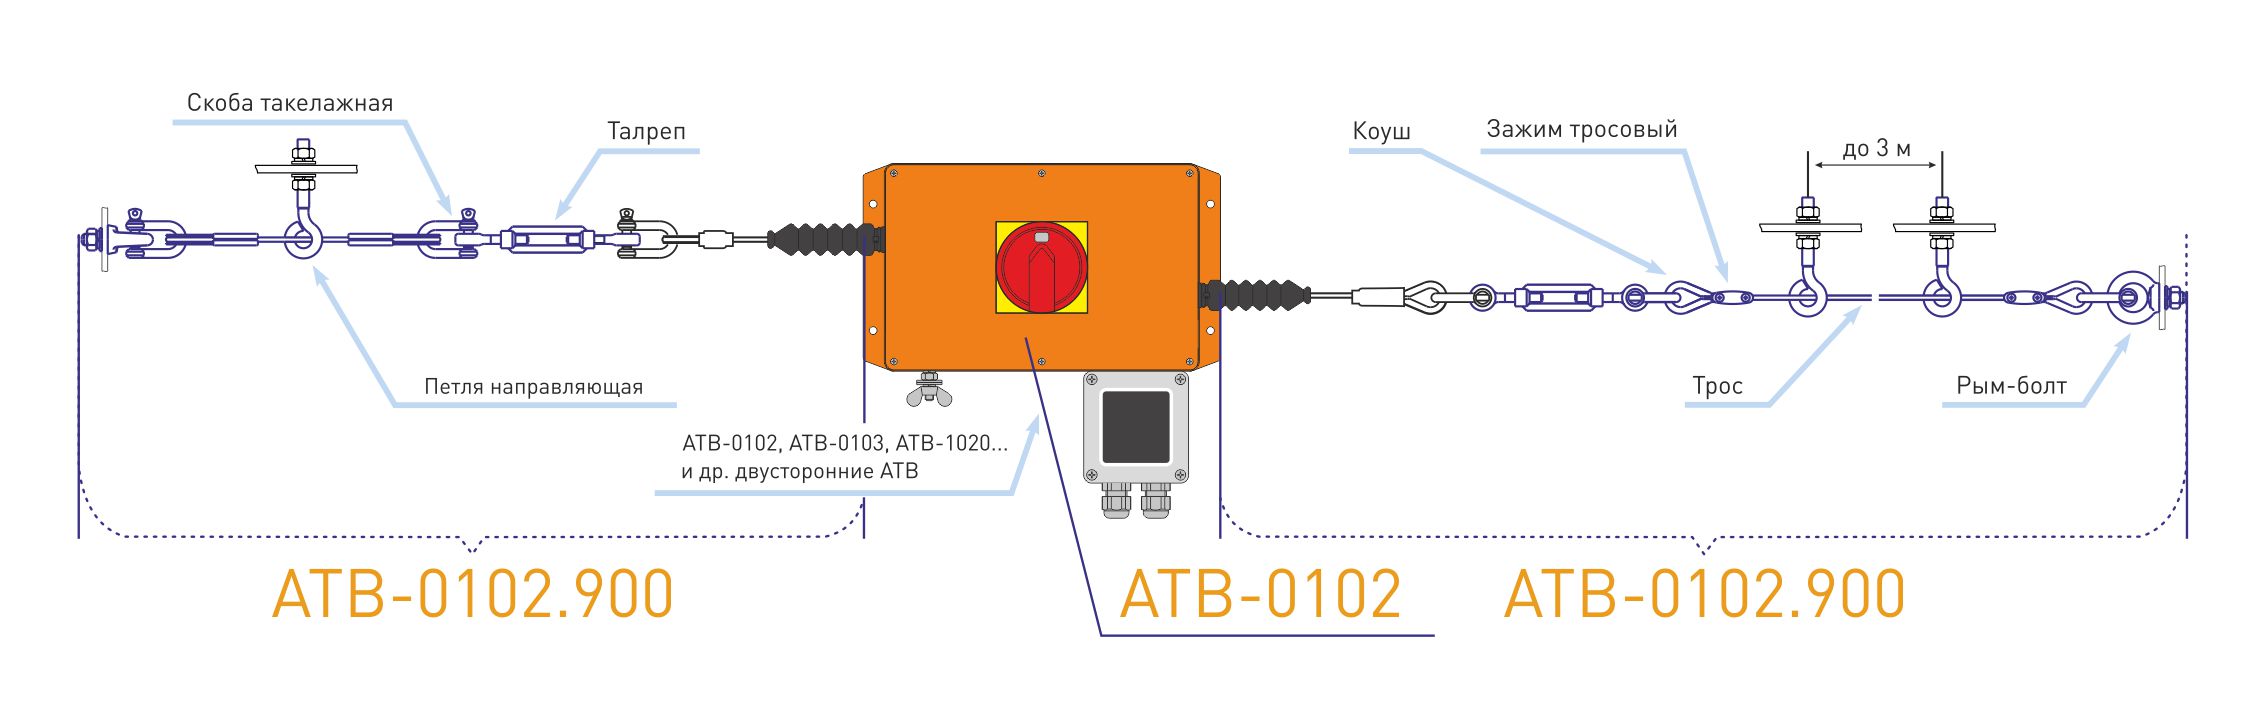 Схема установки аварийного тросового выключателя АТВ-0102 с комплектом АТВ-0102.900